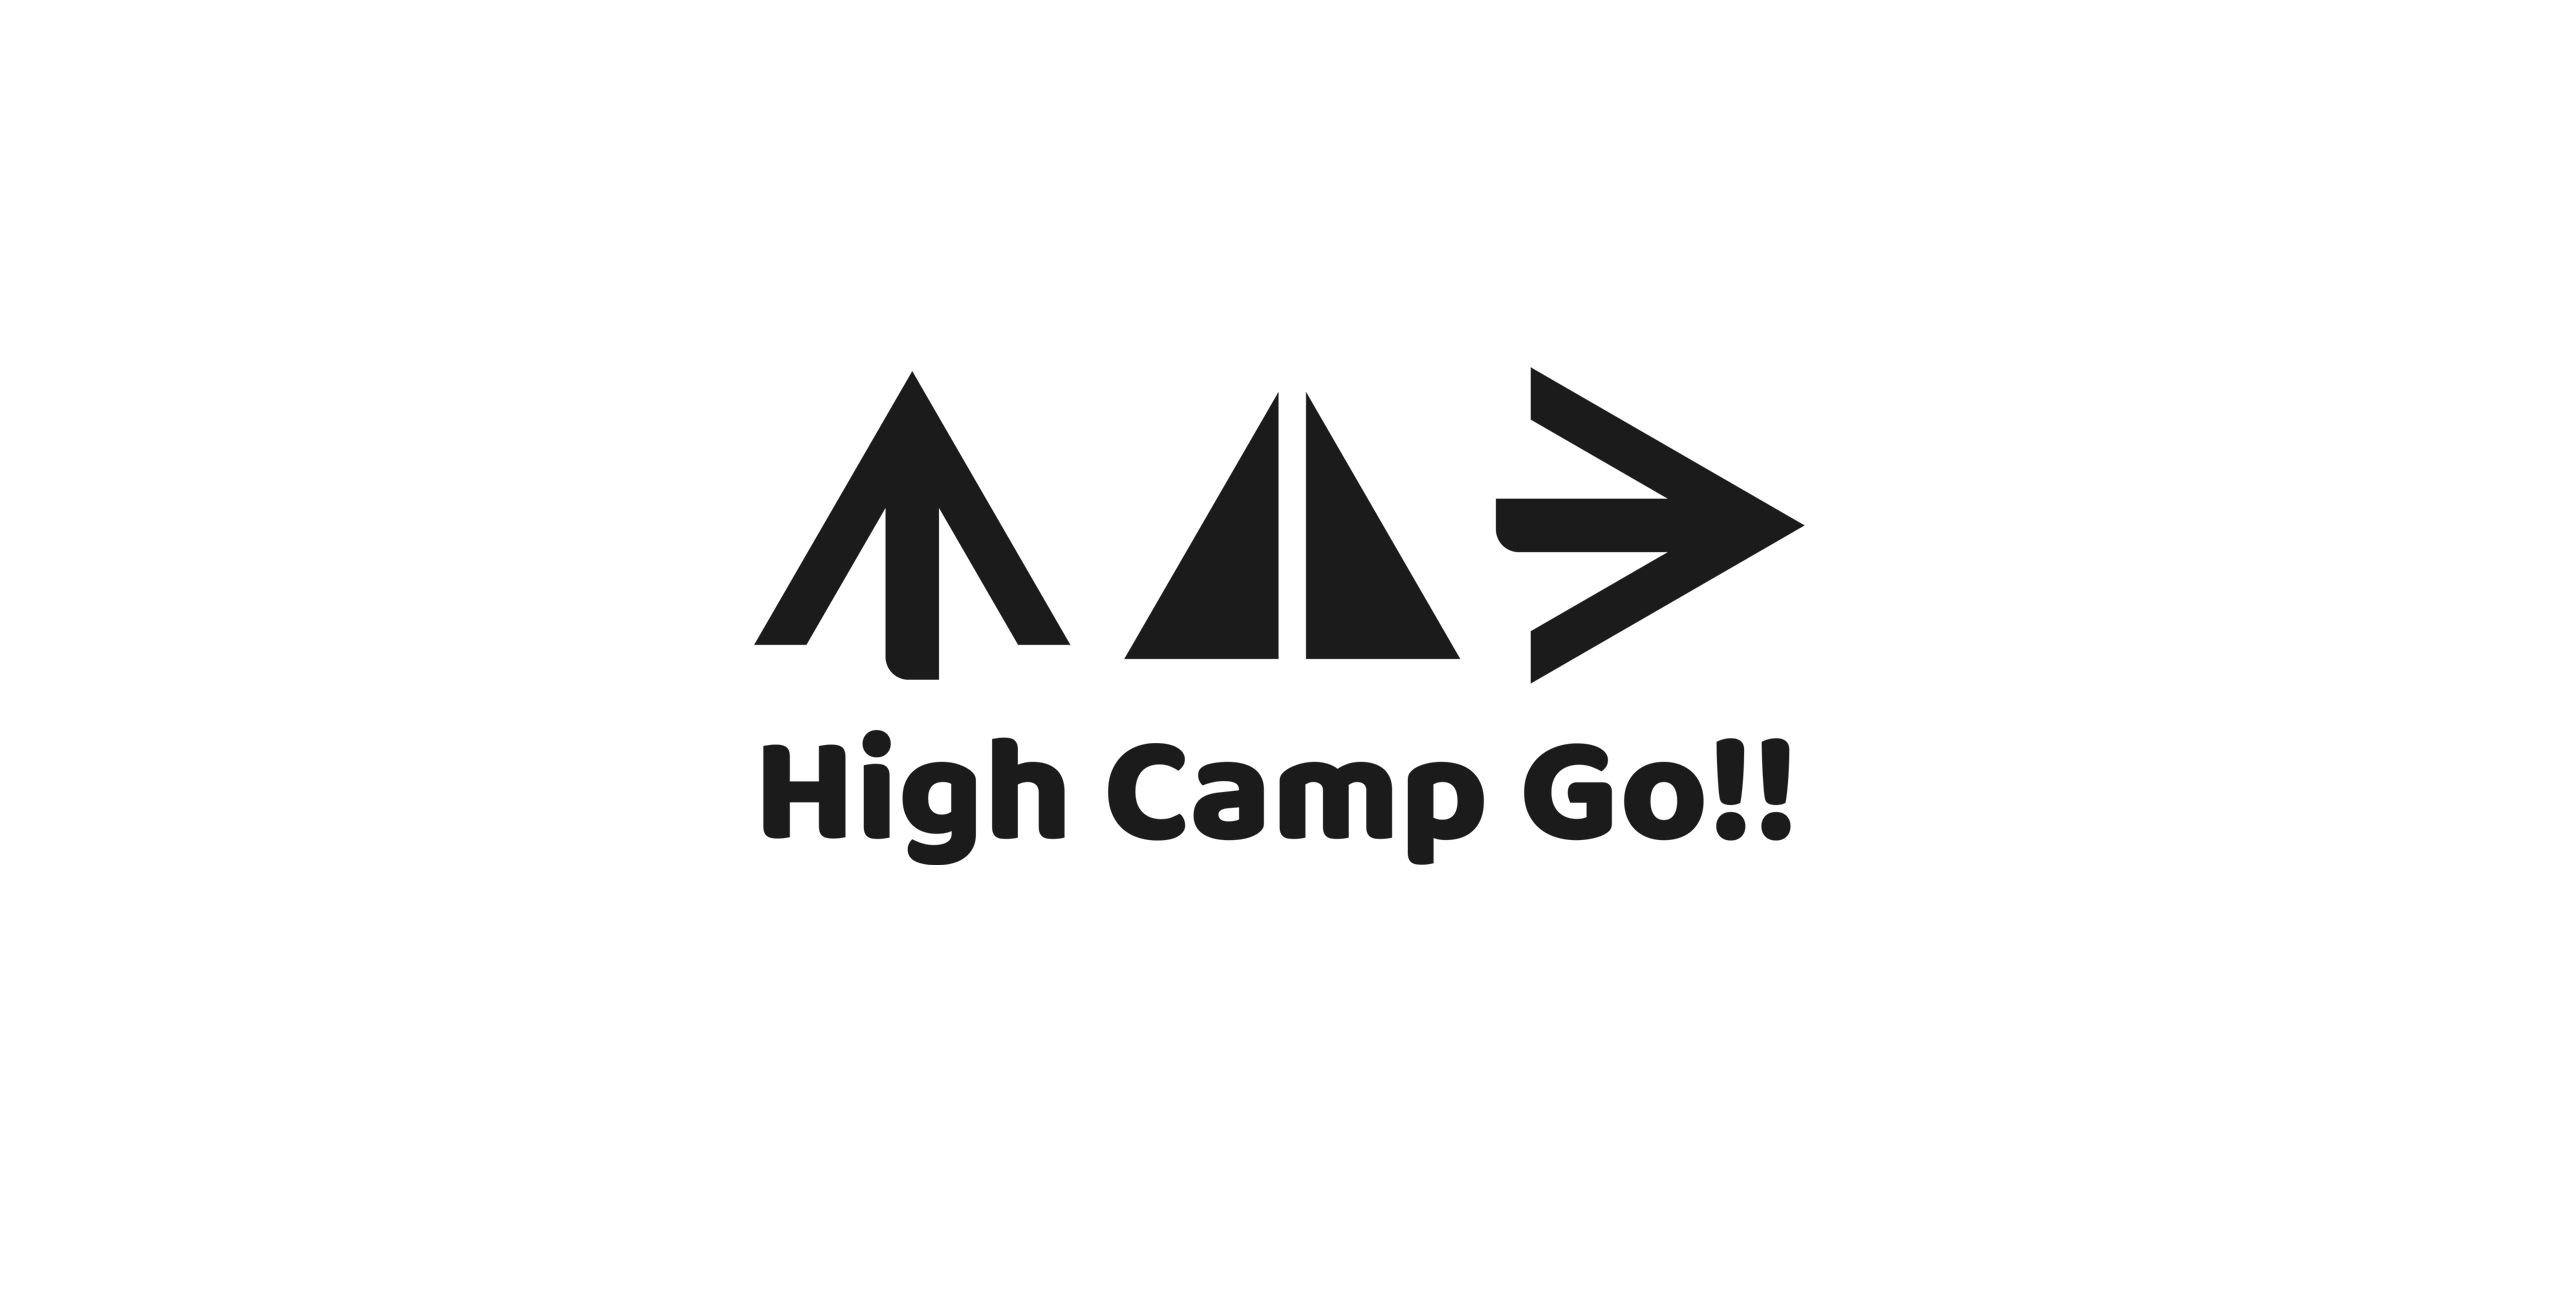 High Camp Go!!